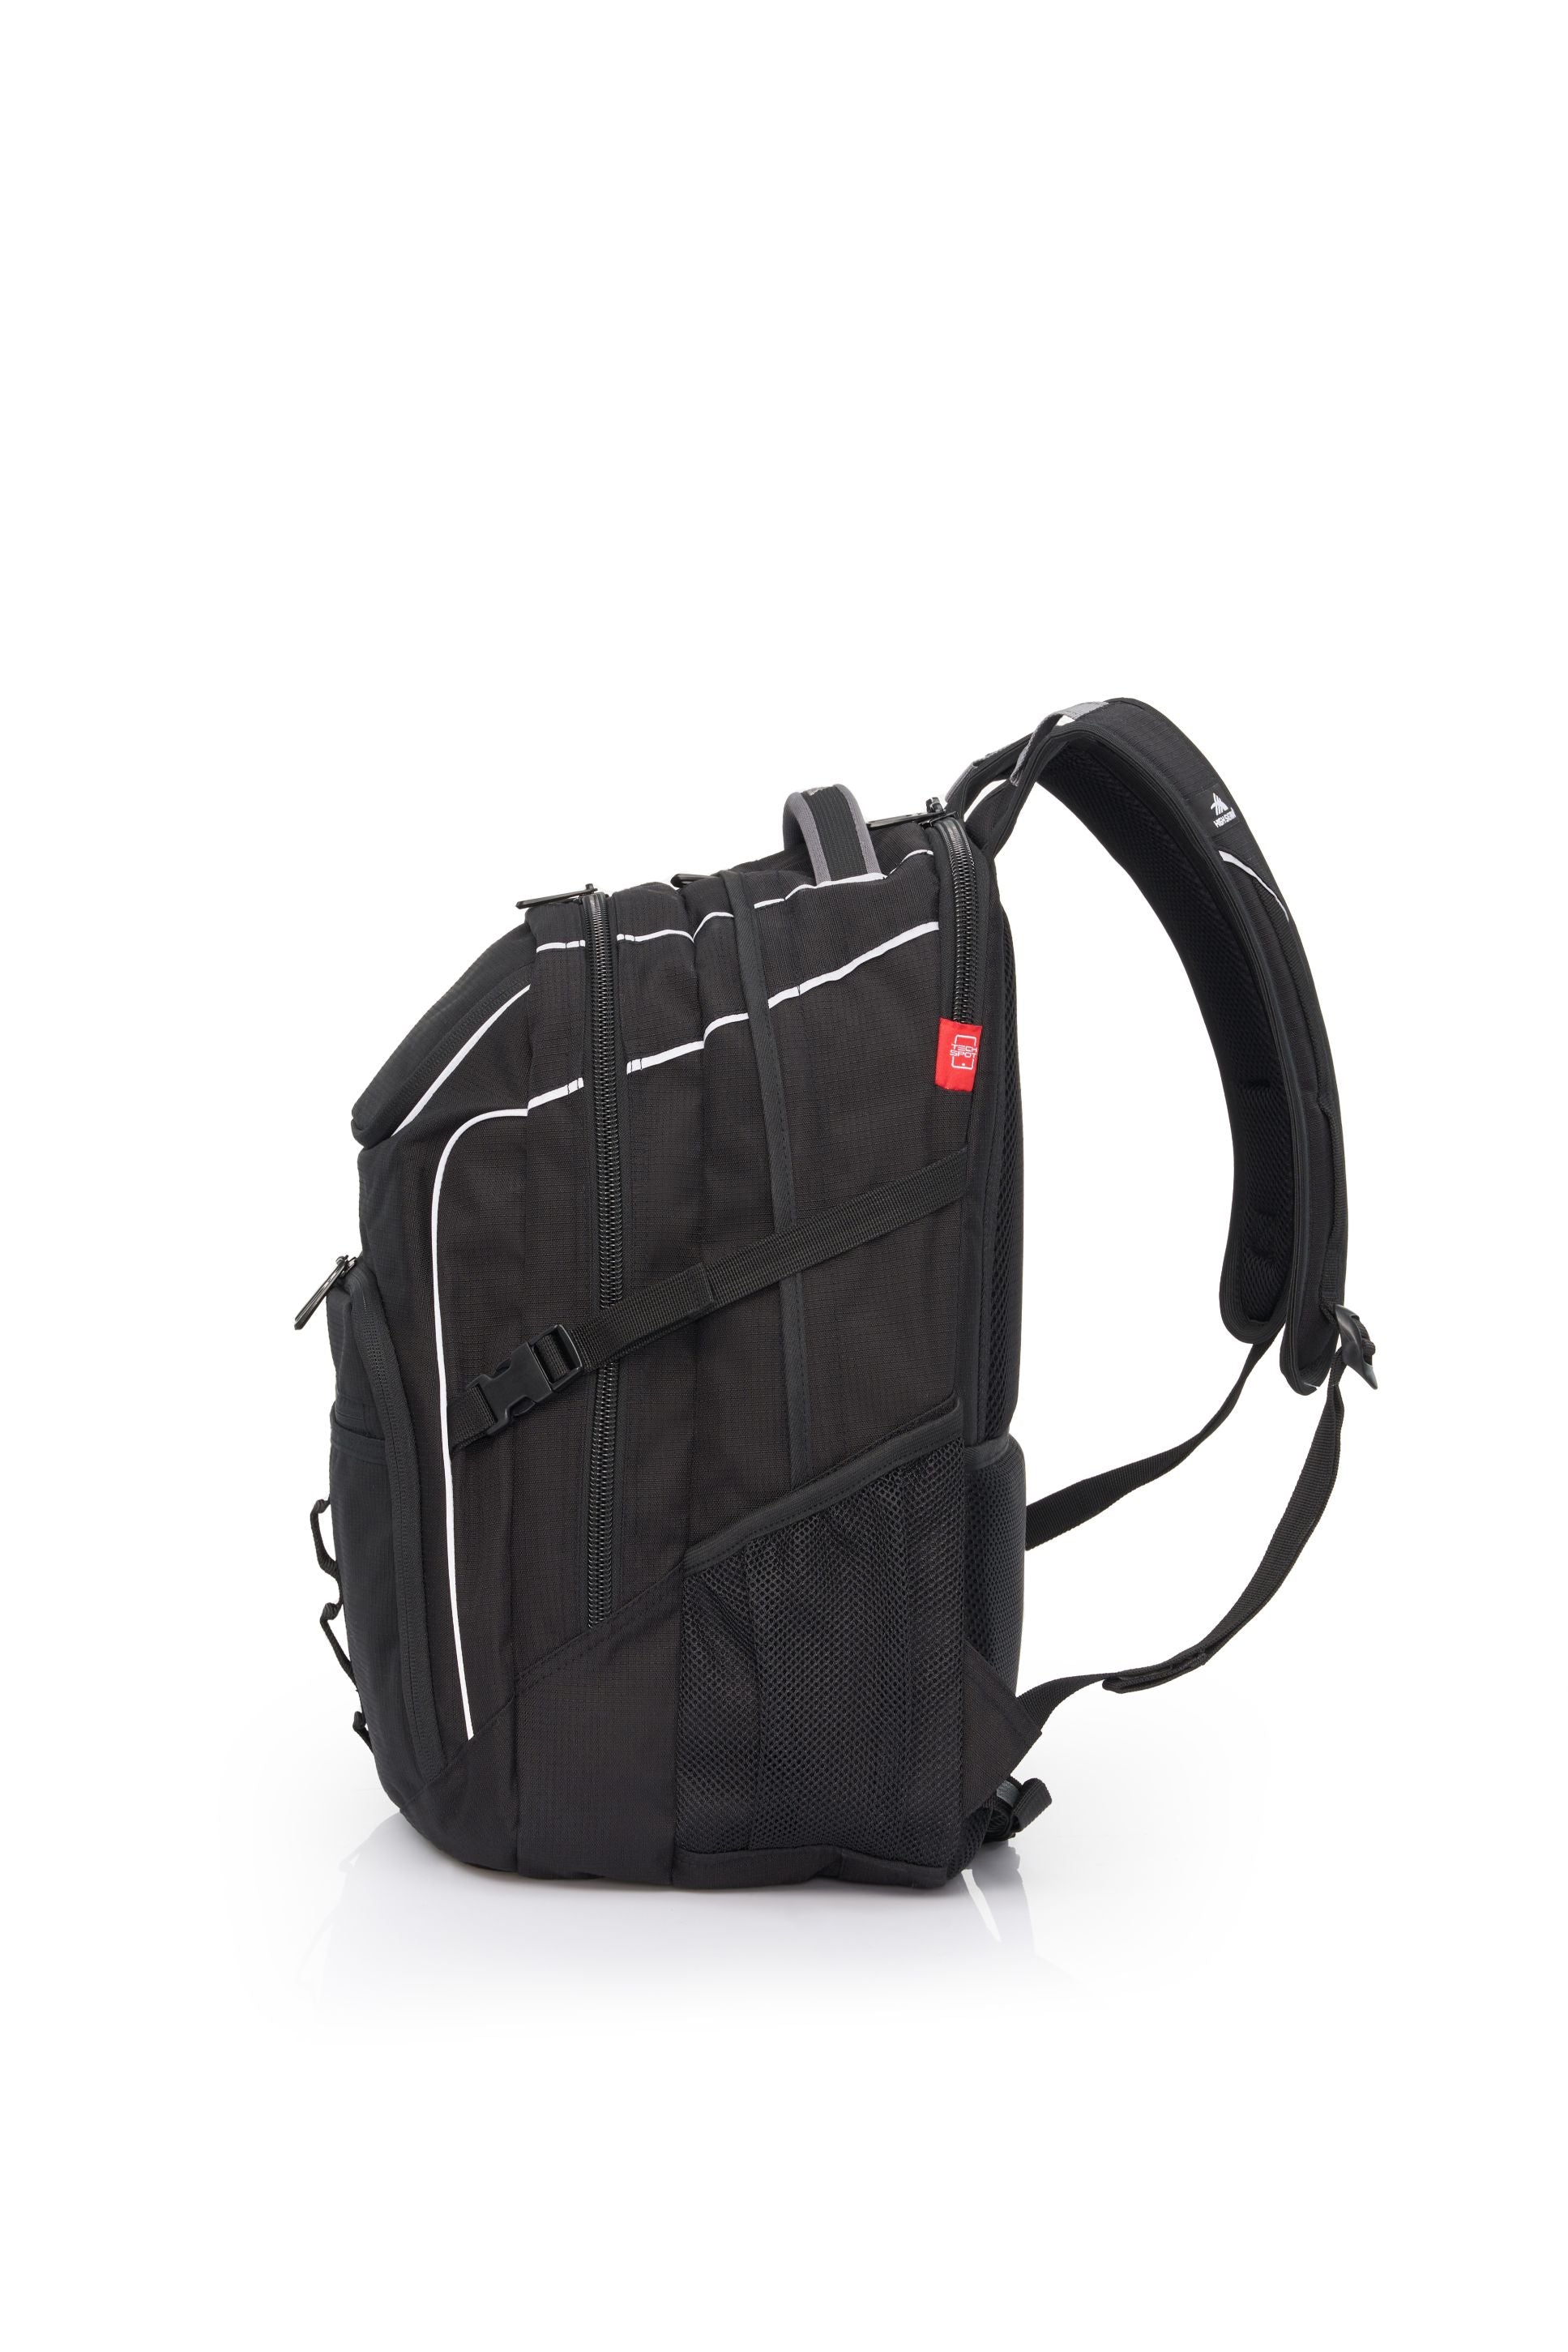 High Sierra - Access 3.0 Eco Backpack - Black-3